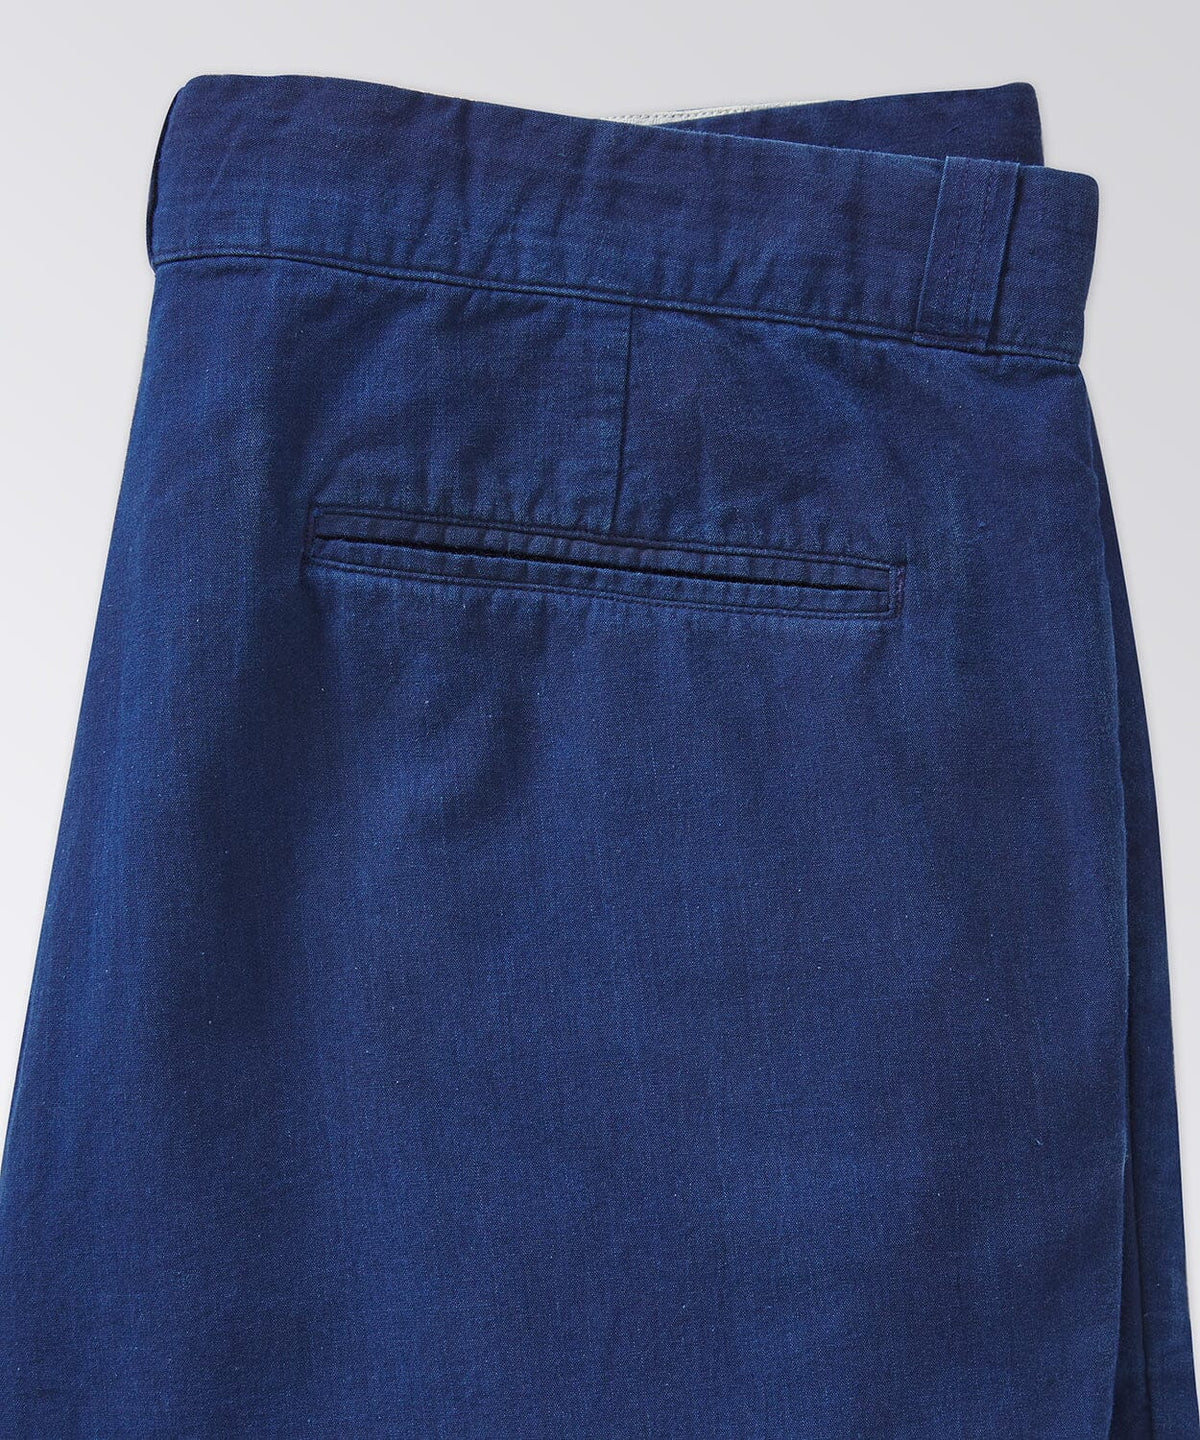 back of blue shorts for men